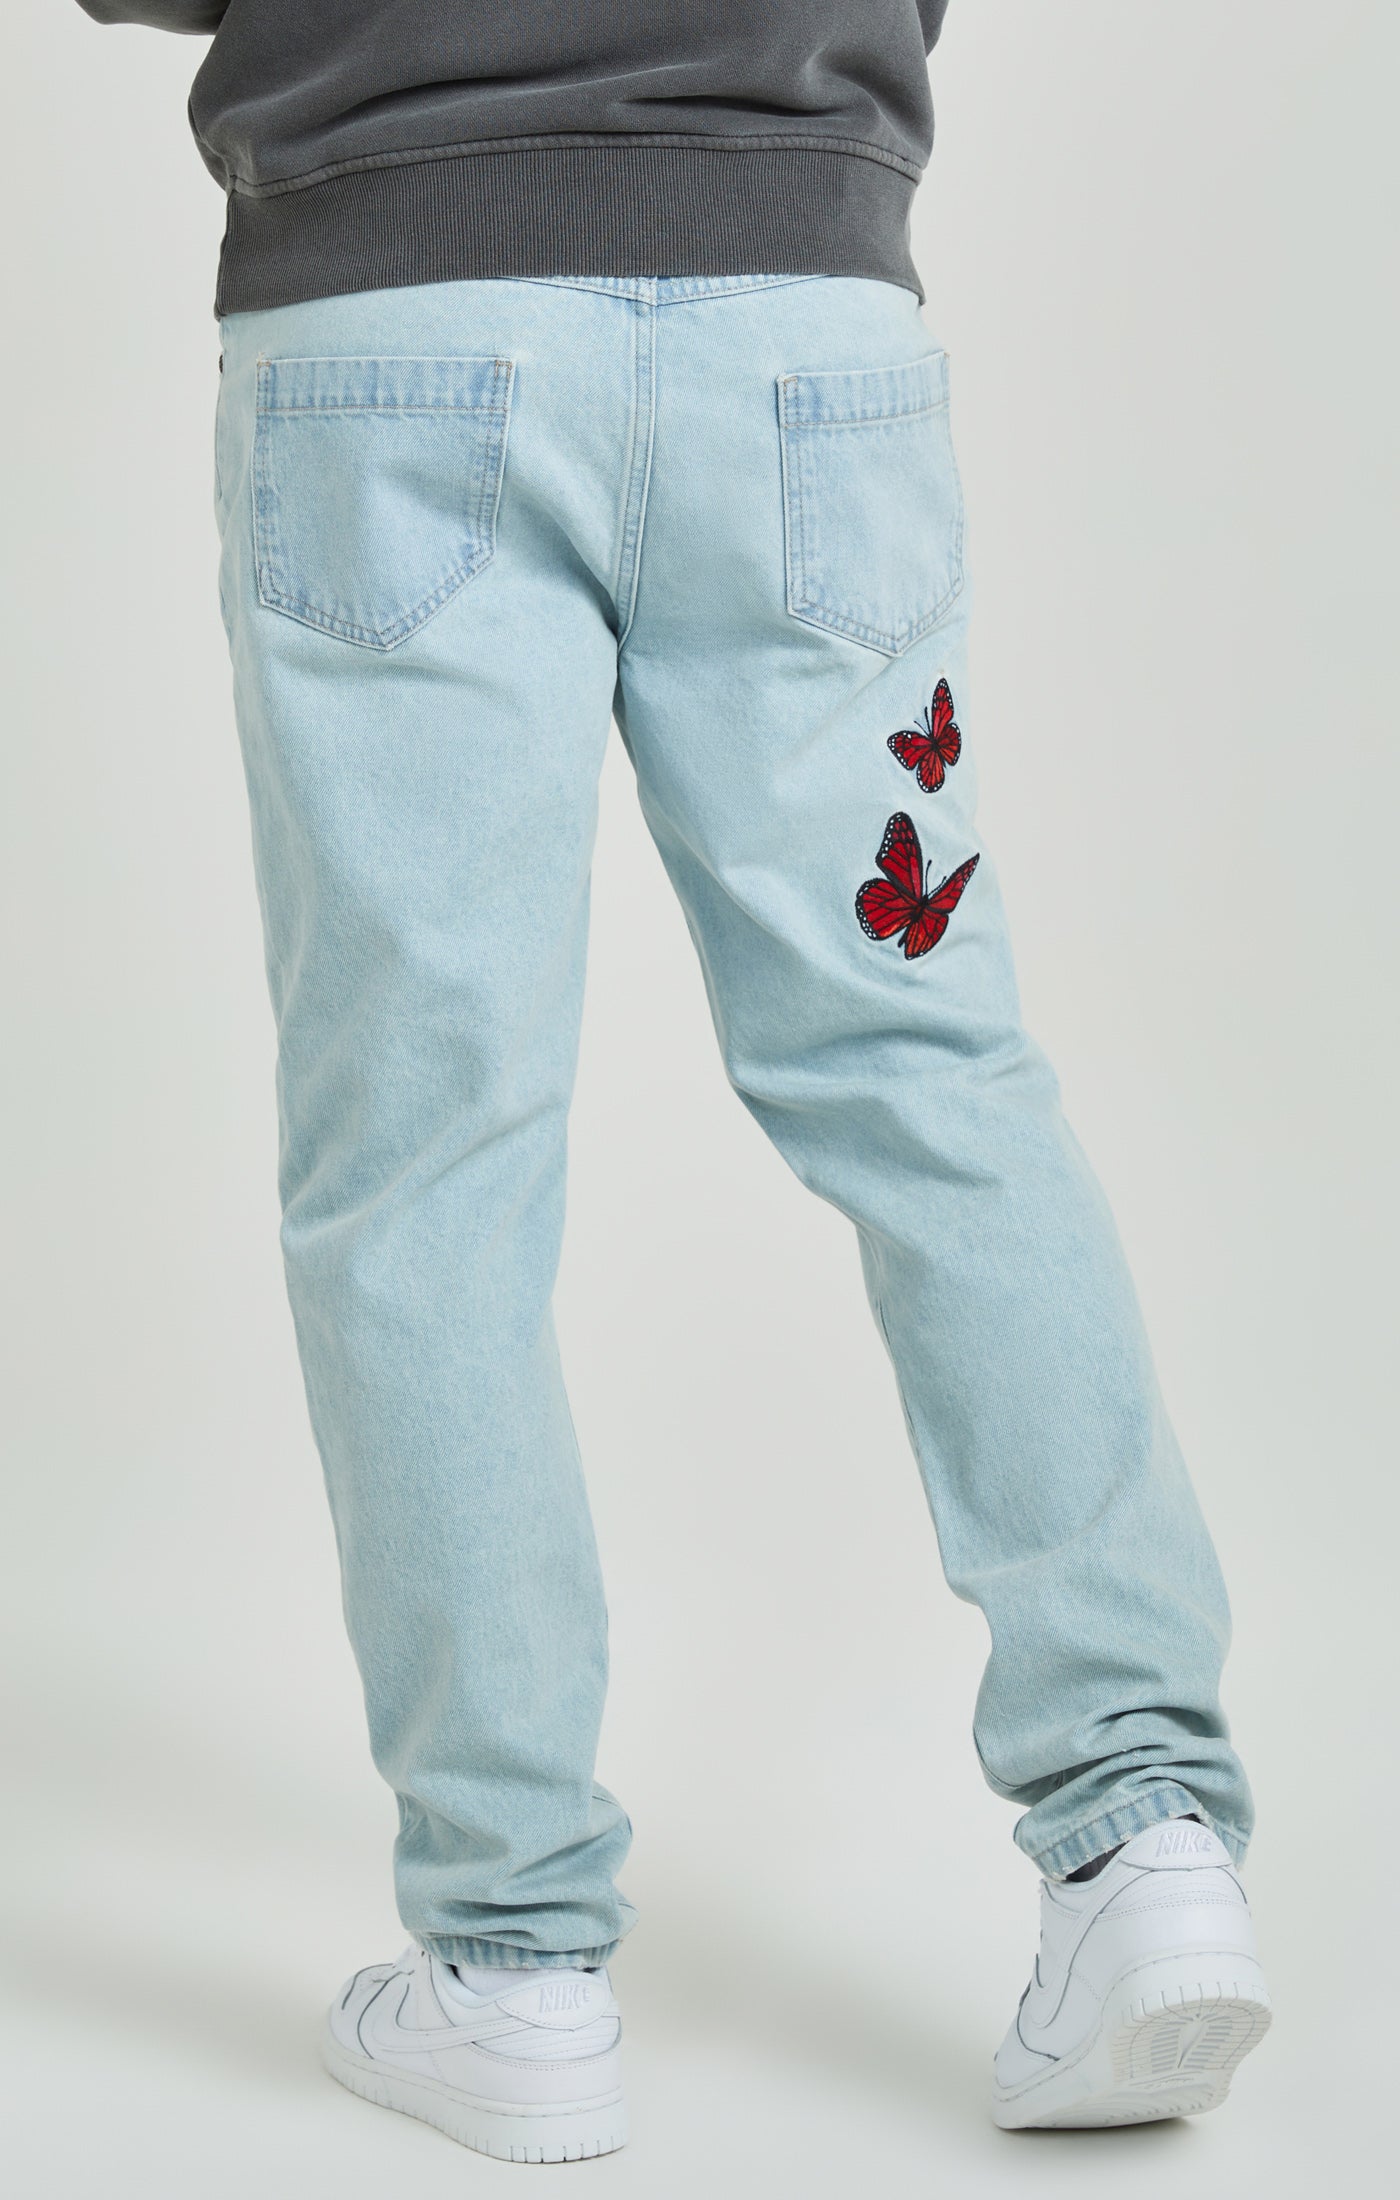 SIKSILK Embroidered Mom Jean - Jeans Slim Fit - light blue/lyseblå 